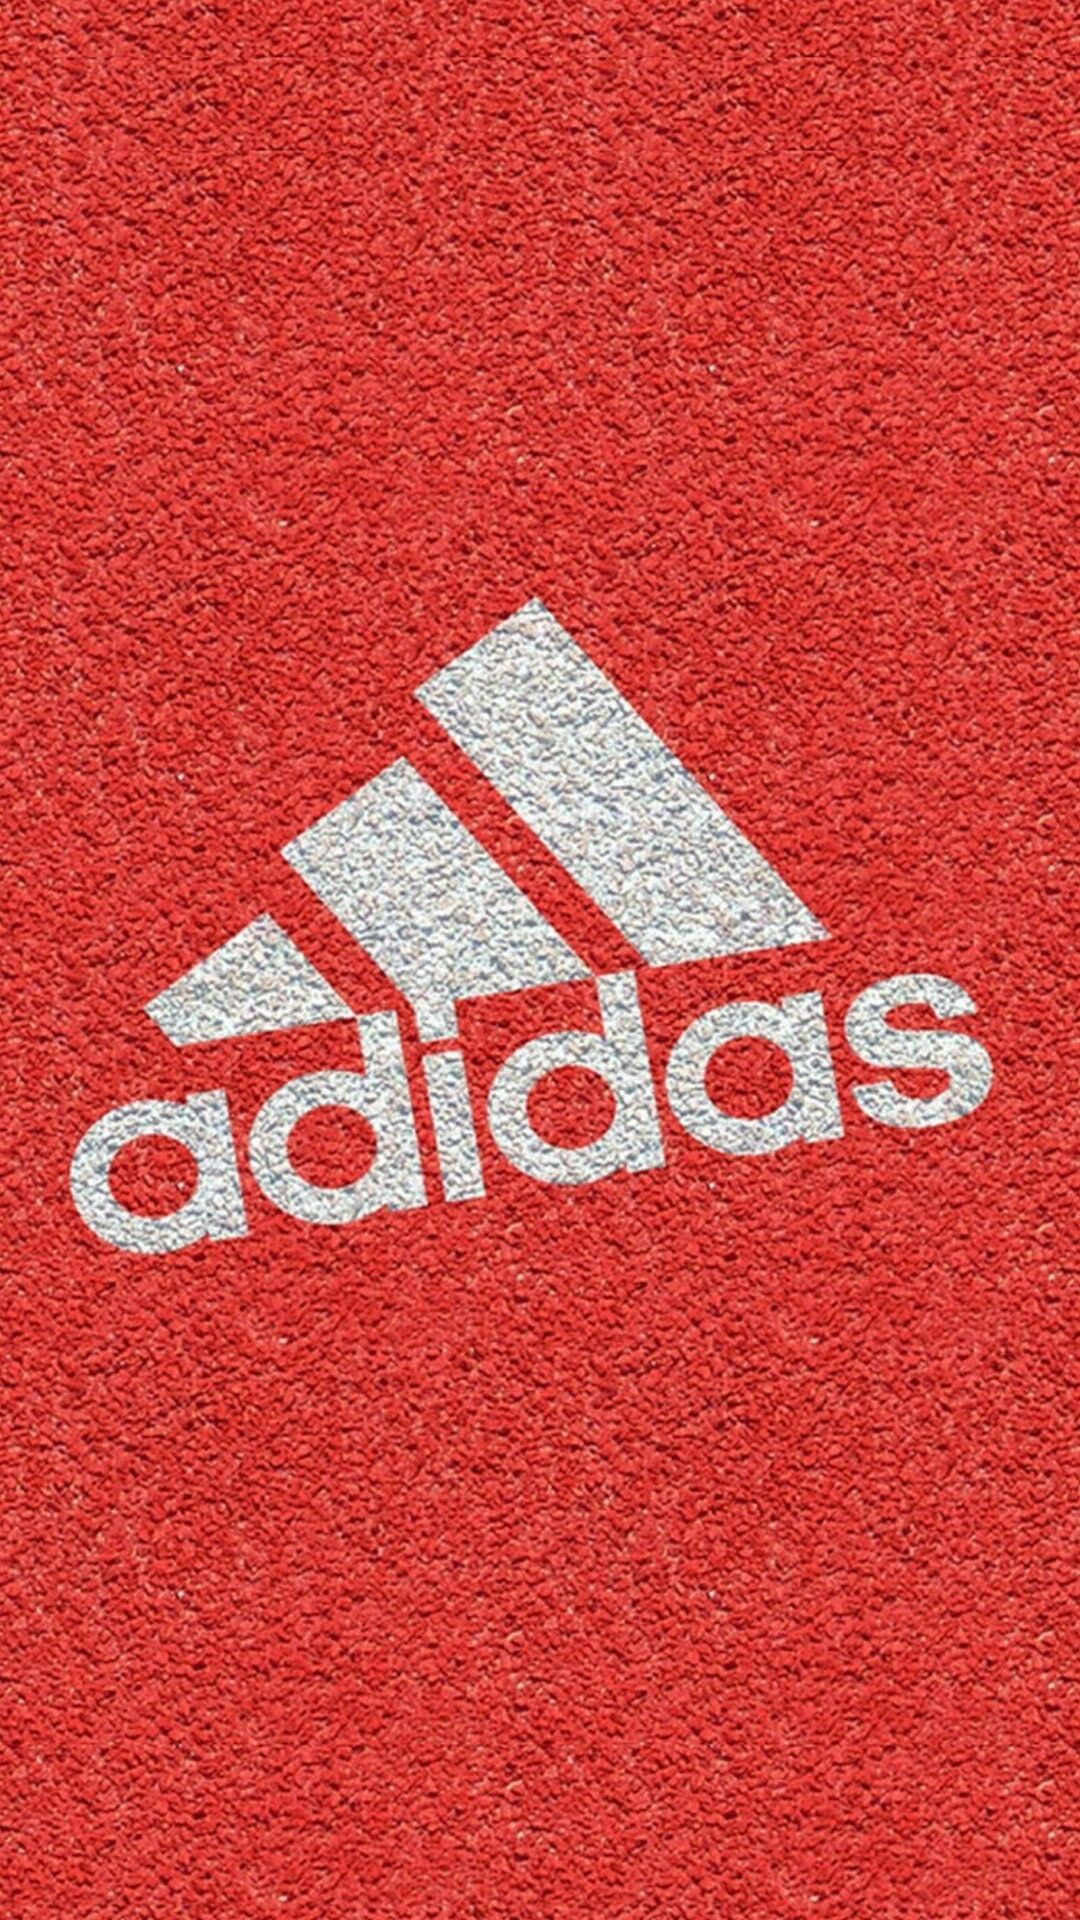 Đội ngũ thiết kế của hãng Adidas đã tạo ra những hình nền HD vô cùng đẹp mắt cho iPhone của bạn. Với các mẫu vải và phối màu độc quyền của Adidas, các hình nền này sẽ mang đến cho bạn sự nổi bật và phong cách thể thao đậm chất Adidas. Hãy cùng chiêm ngưỡng những hình nền Adidas iPhone HD độc đáo trong bộ sưu tập của chúng tôi.